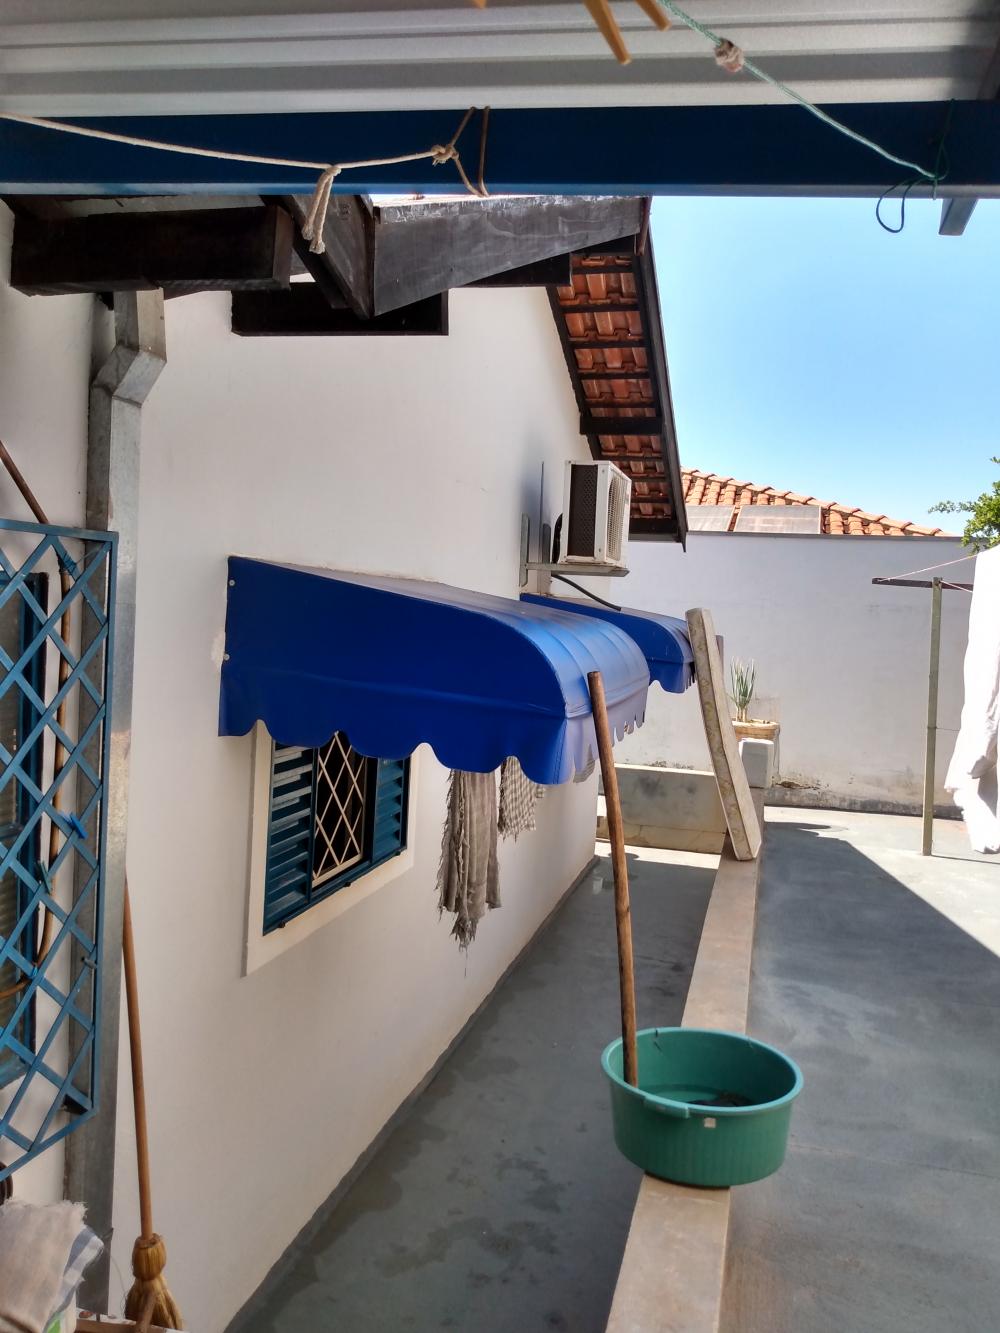 Alugar Casa / Padrão em São José do Rio Preto R$ 850,00 - Foto 16